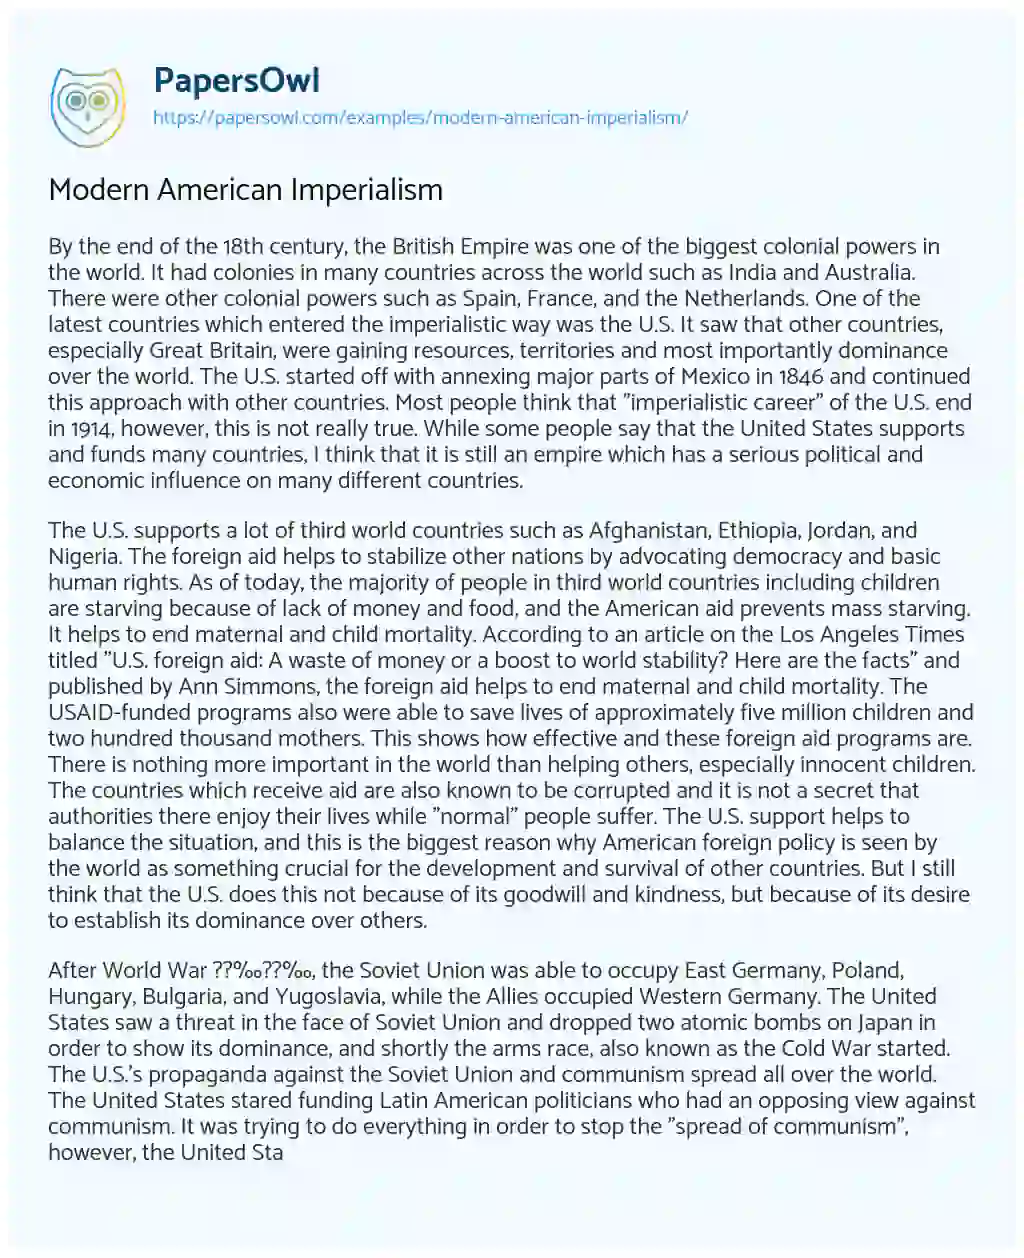 Essay on Modern American Imperialism